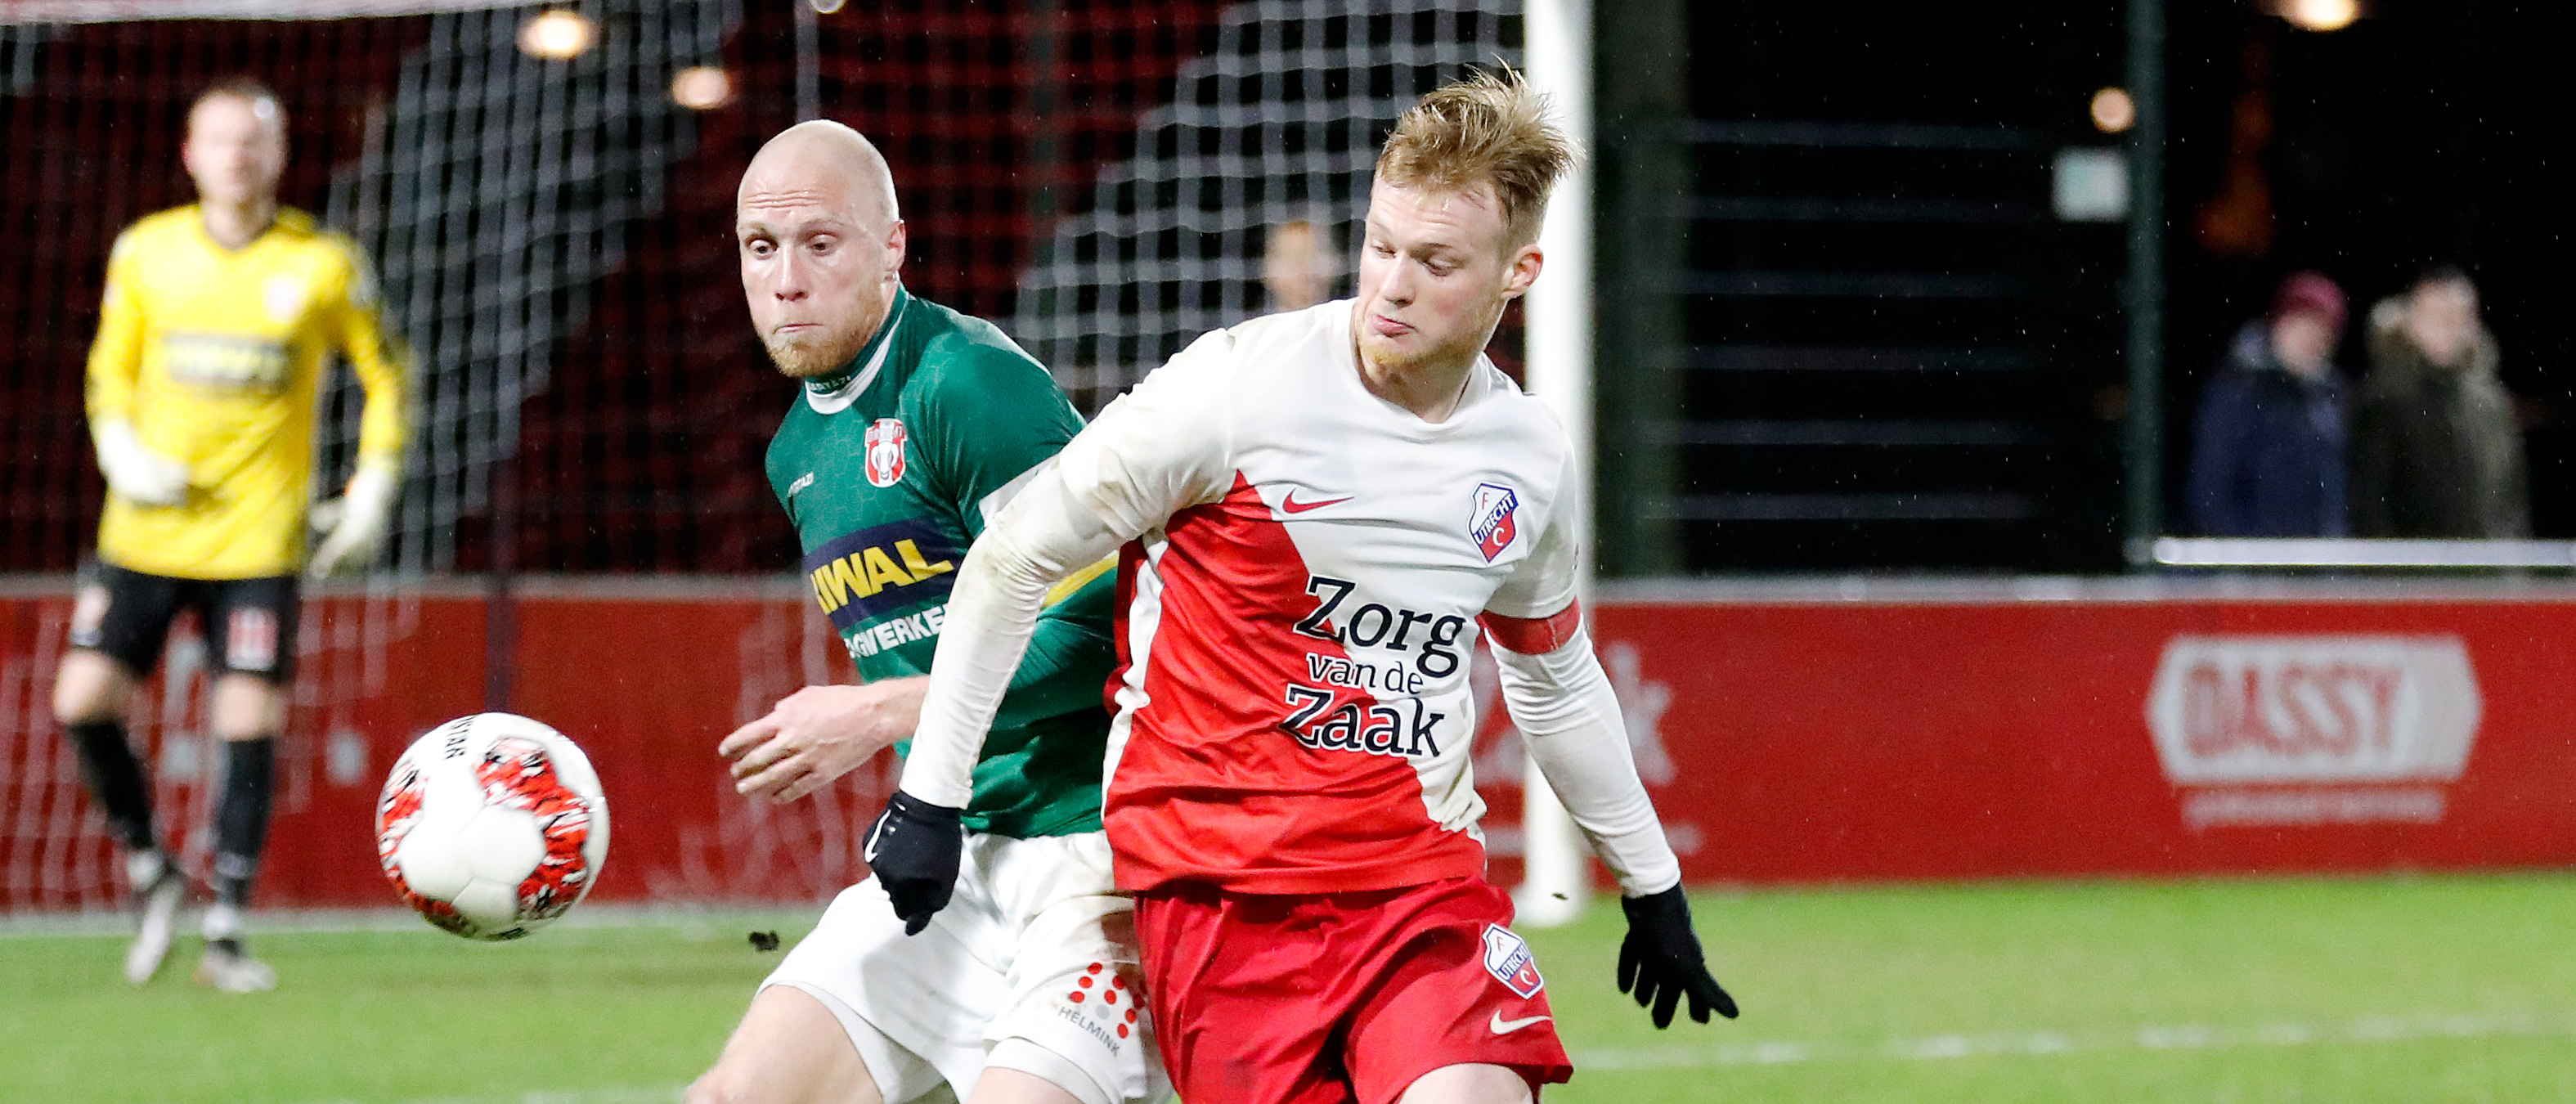 Puntendeling Jong FC Utrecht door late tegentreffer